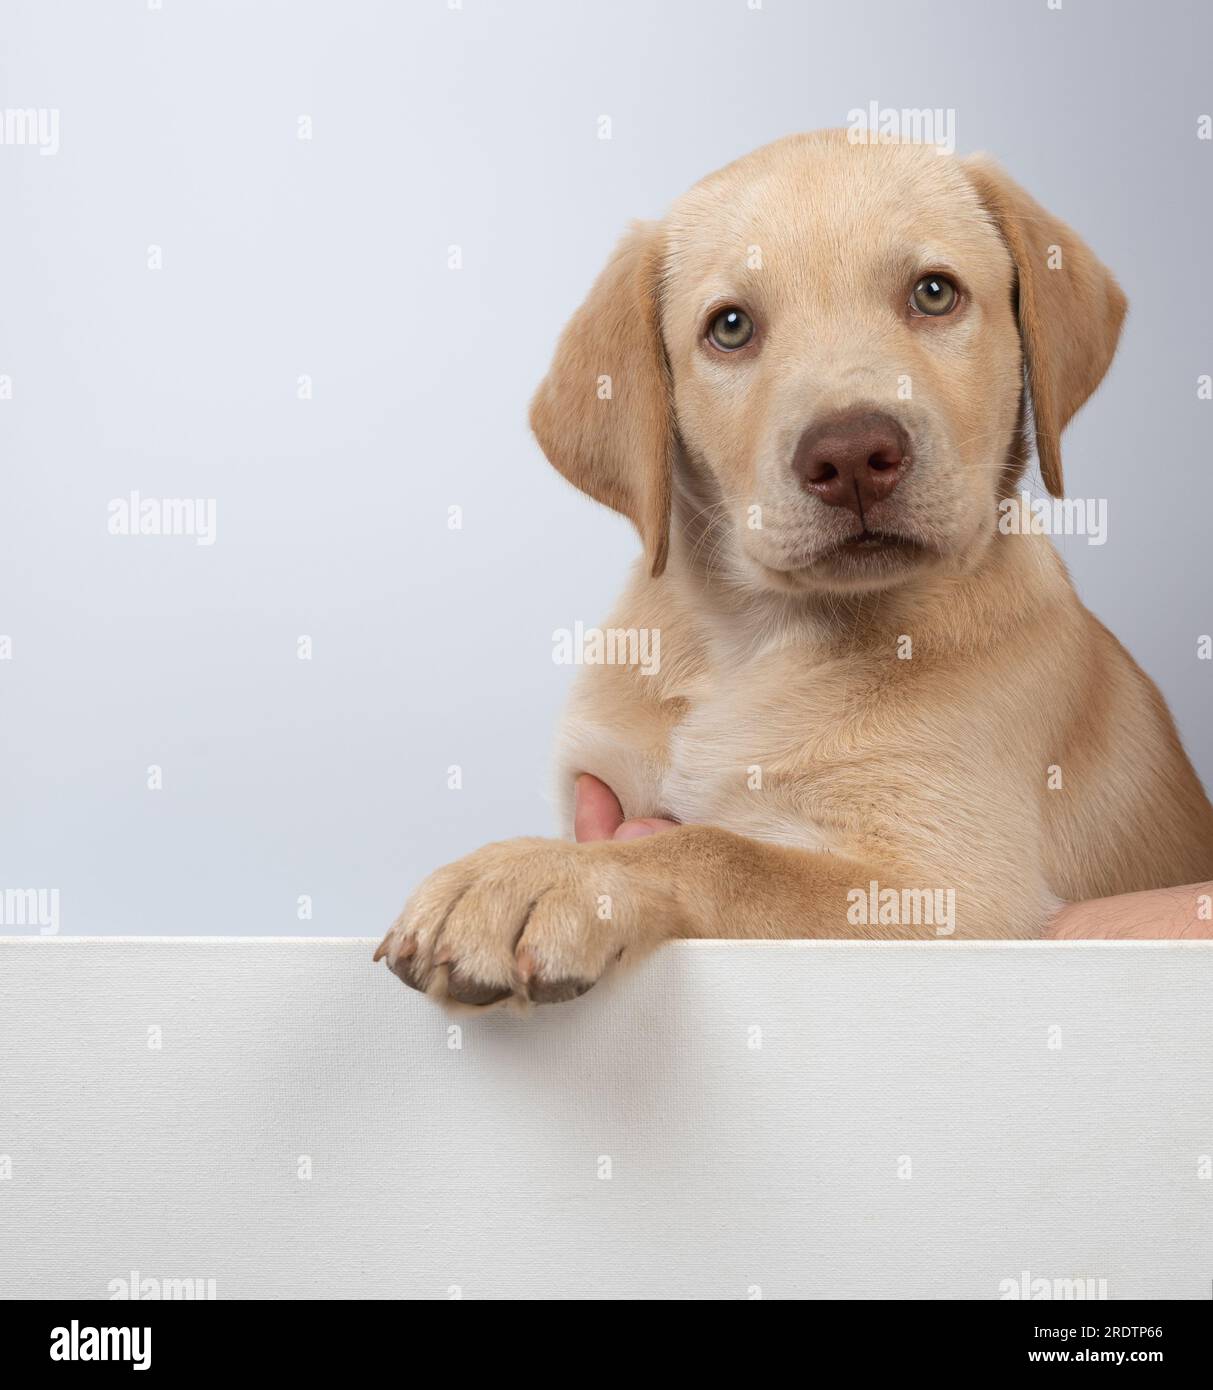 Adorabile cucciolo da laboratorio che guarda nella fotocamera isolato su uno sfondo bianco dello studio Foto Stock